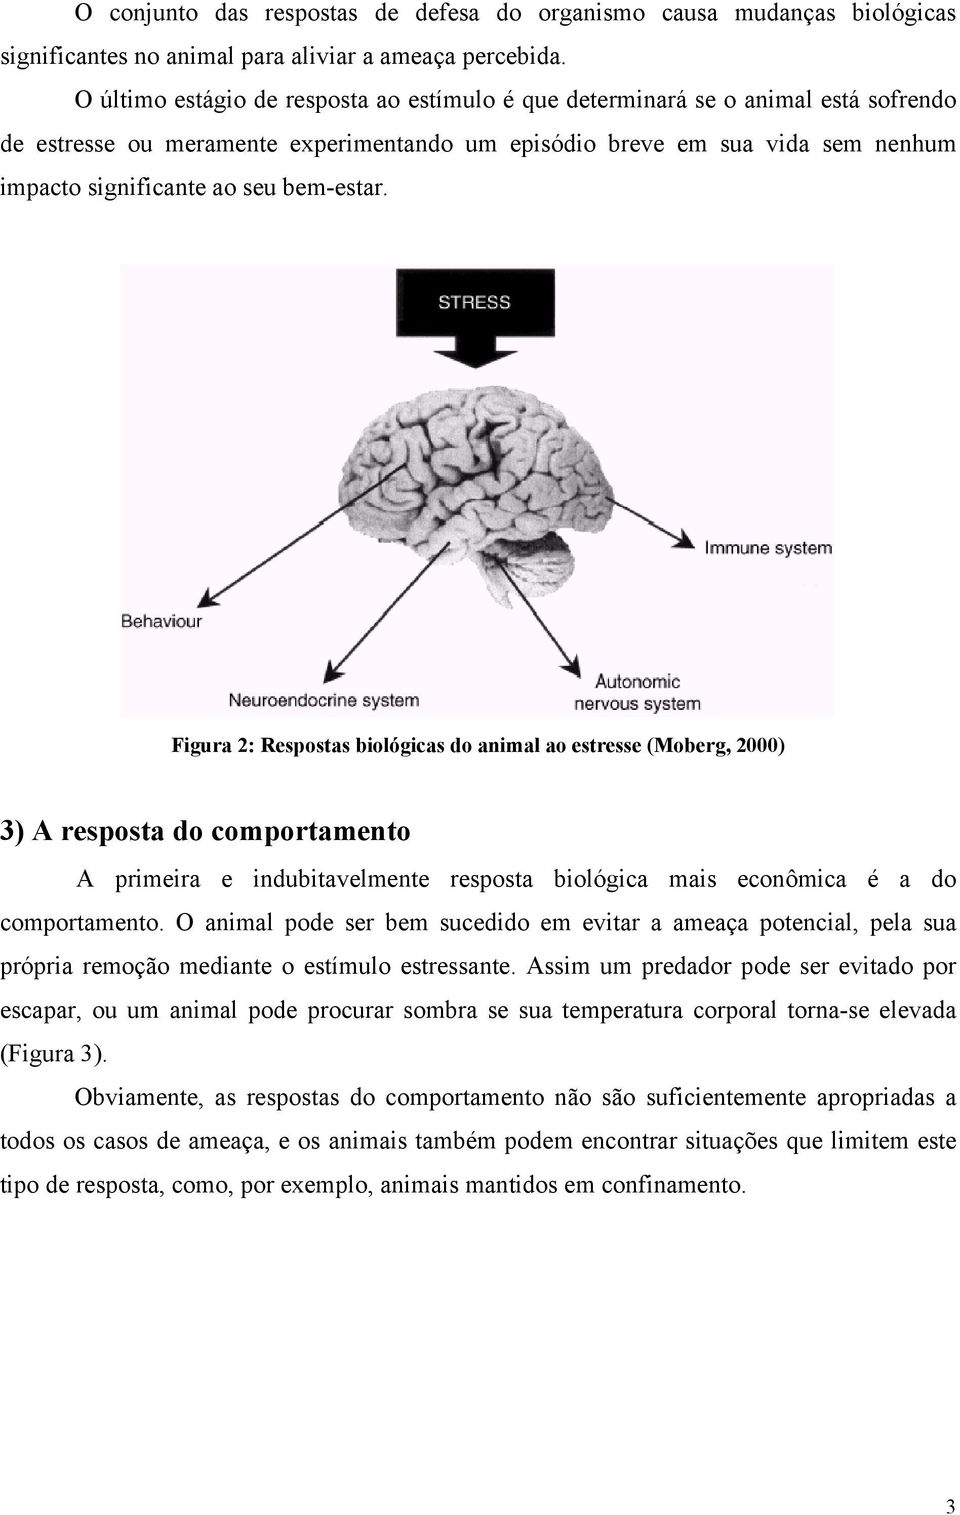 bem-estar. Figura 2: Respostas biológicas do animal ao estresse (Moberg, 2000) 3) A resposta do comportamento A primeira e indubitavelmente resposta biológica mais econômica é a do comportamento.